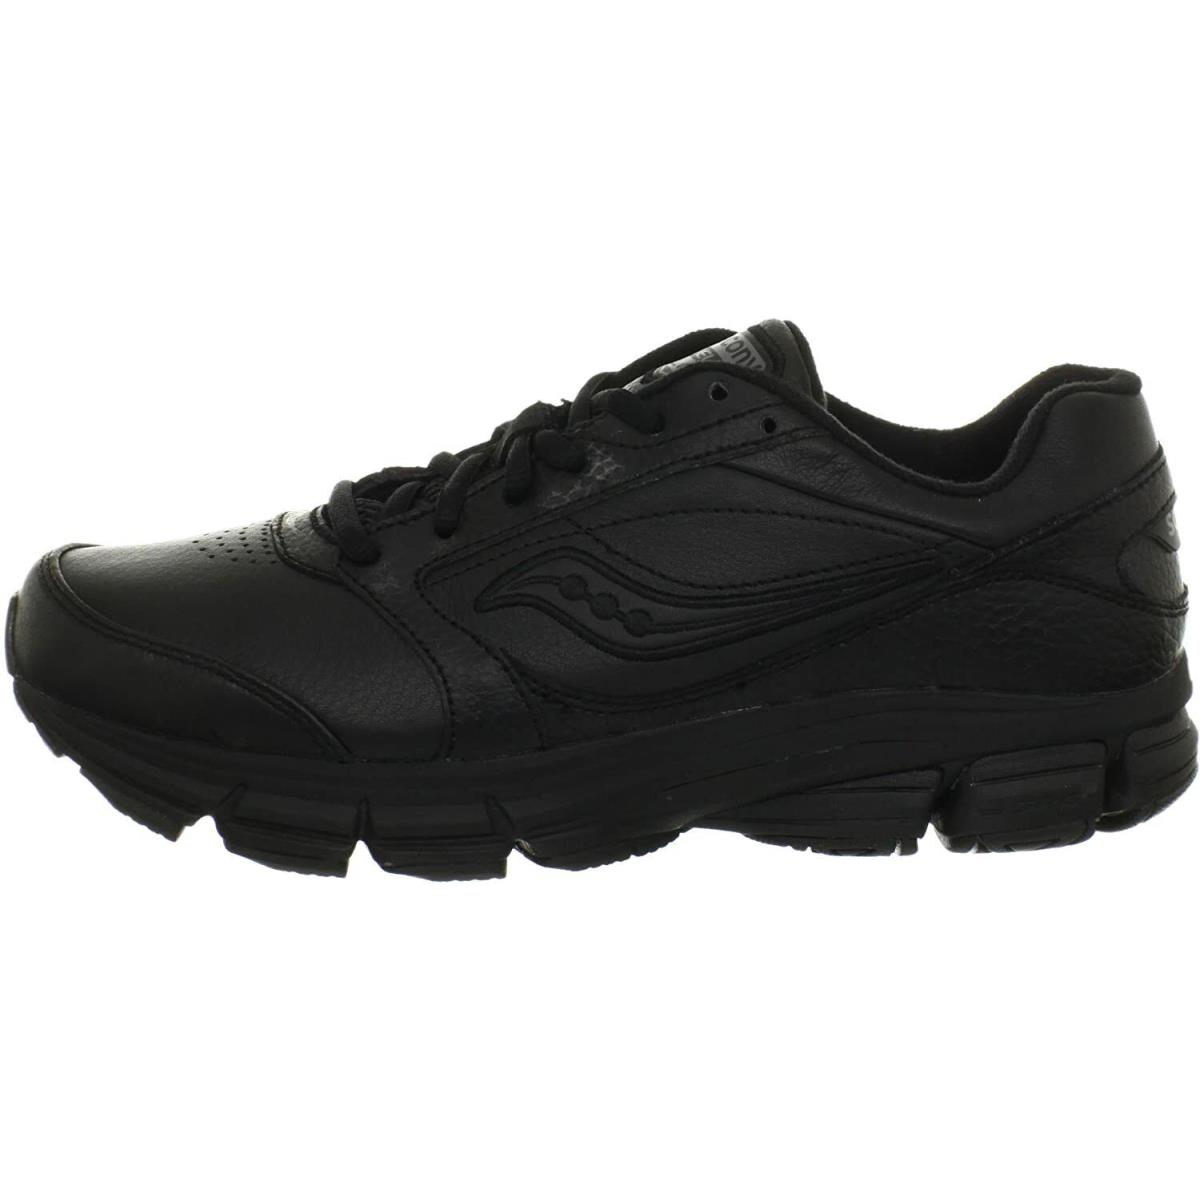 Saucony shoes  - Black 5